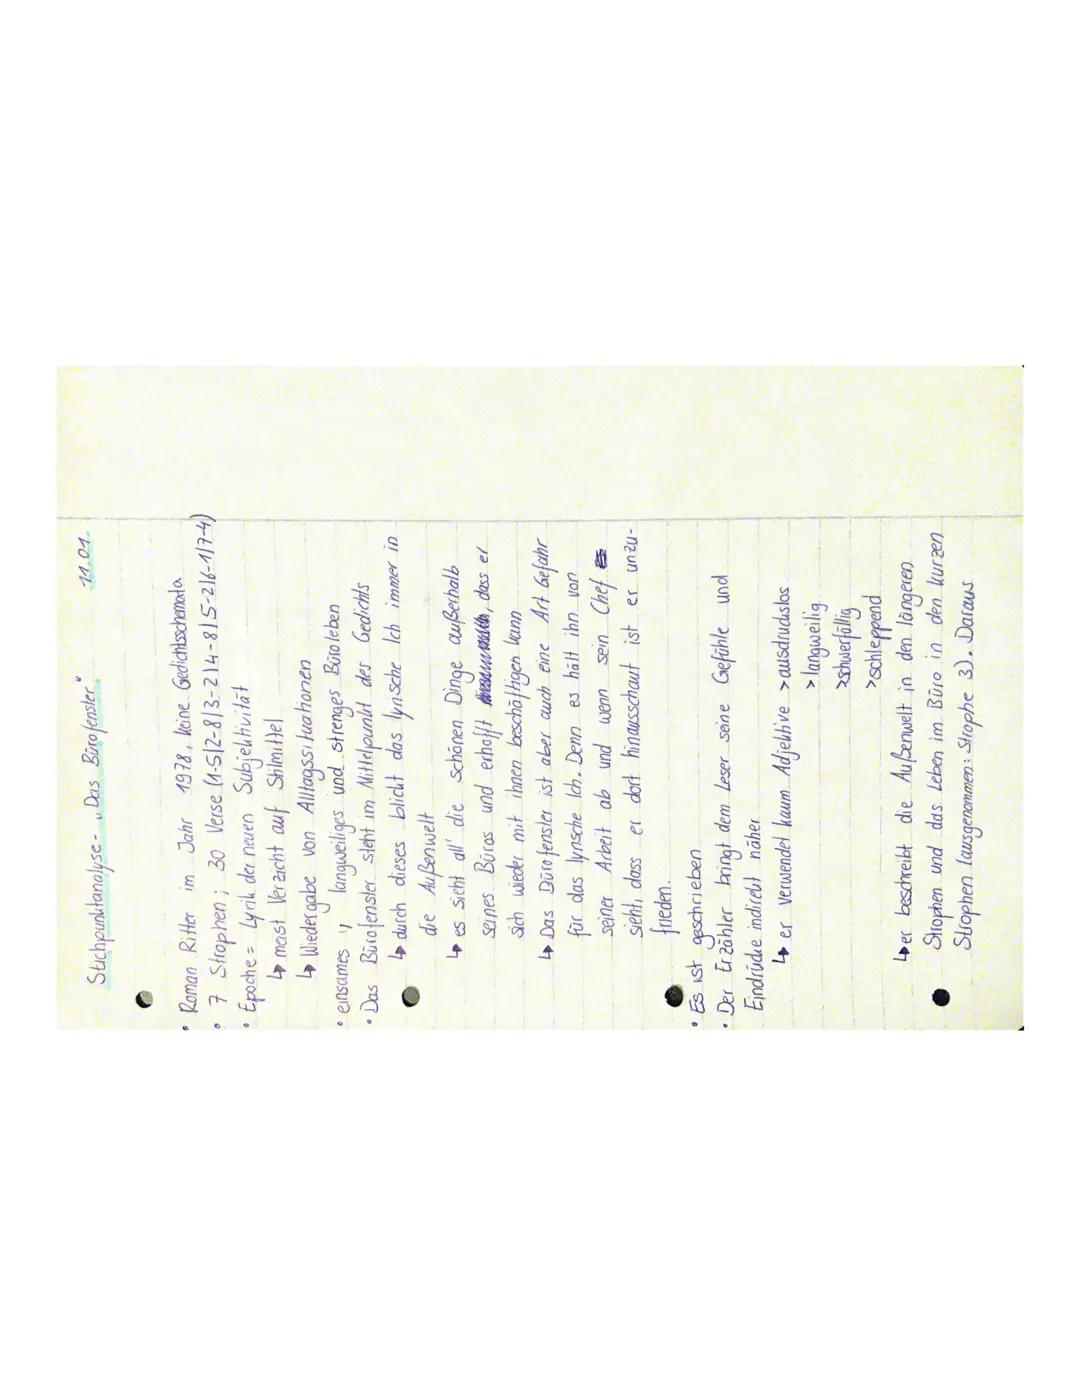 Stichpunktanalyse- Das Büro fenster
• Roman Ritter im Jahr 1978, keine Gedichtsschemata
• 7 Strophen; 30 Verse (1-512-8/3-214-815-216-117-4)